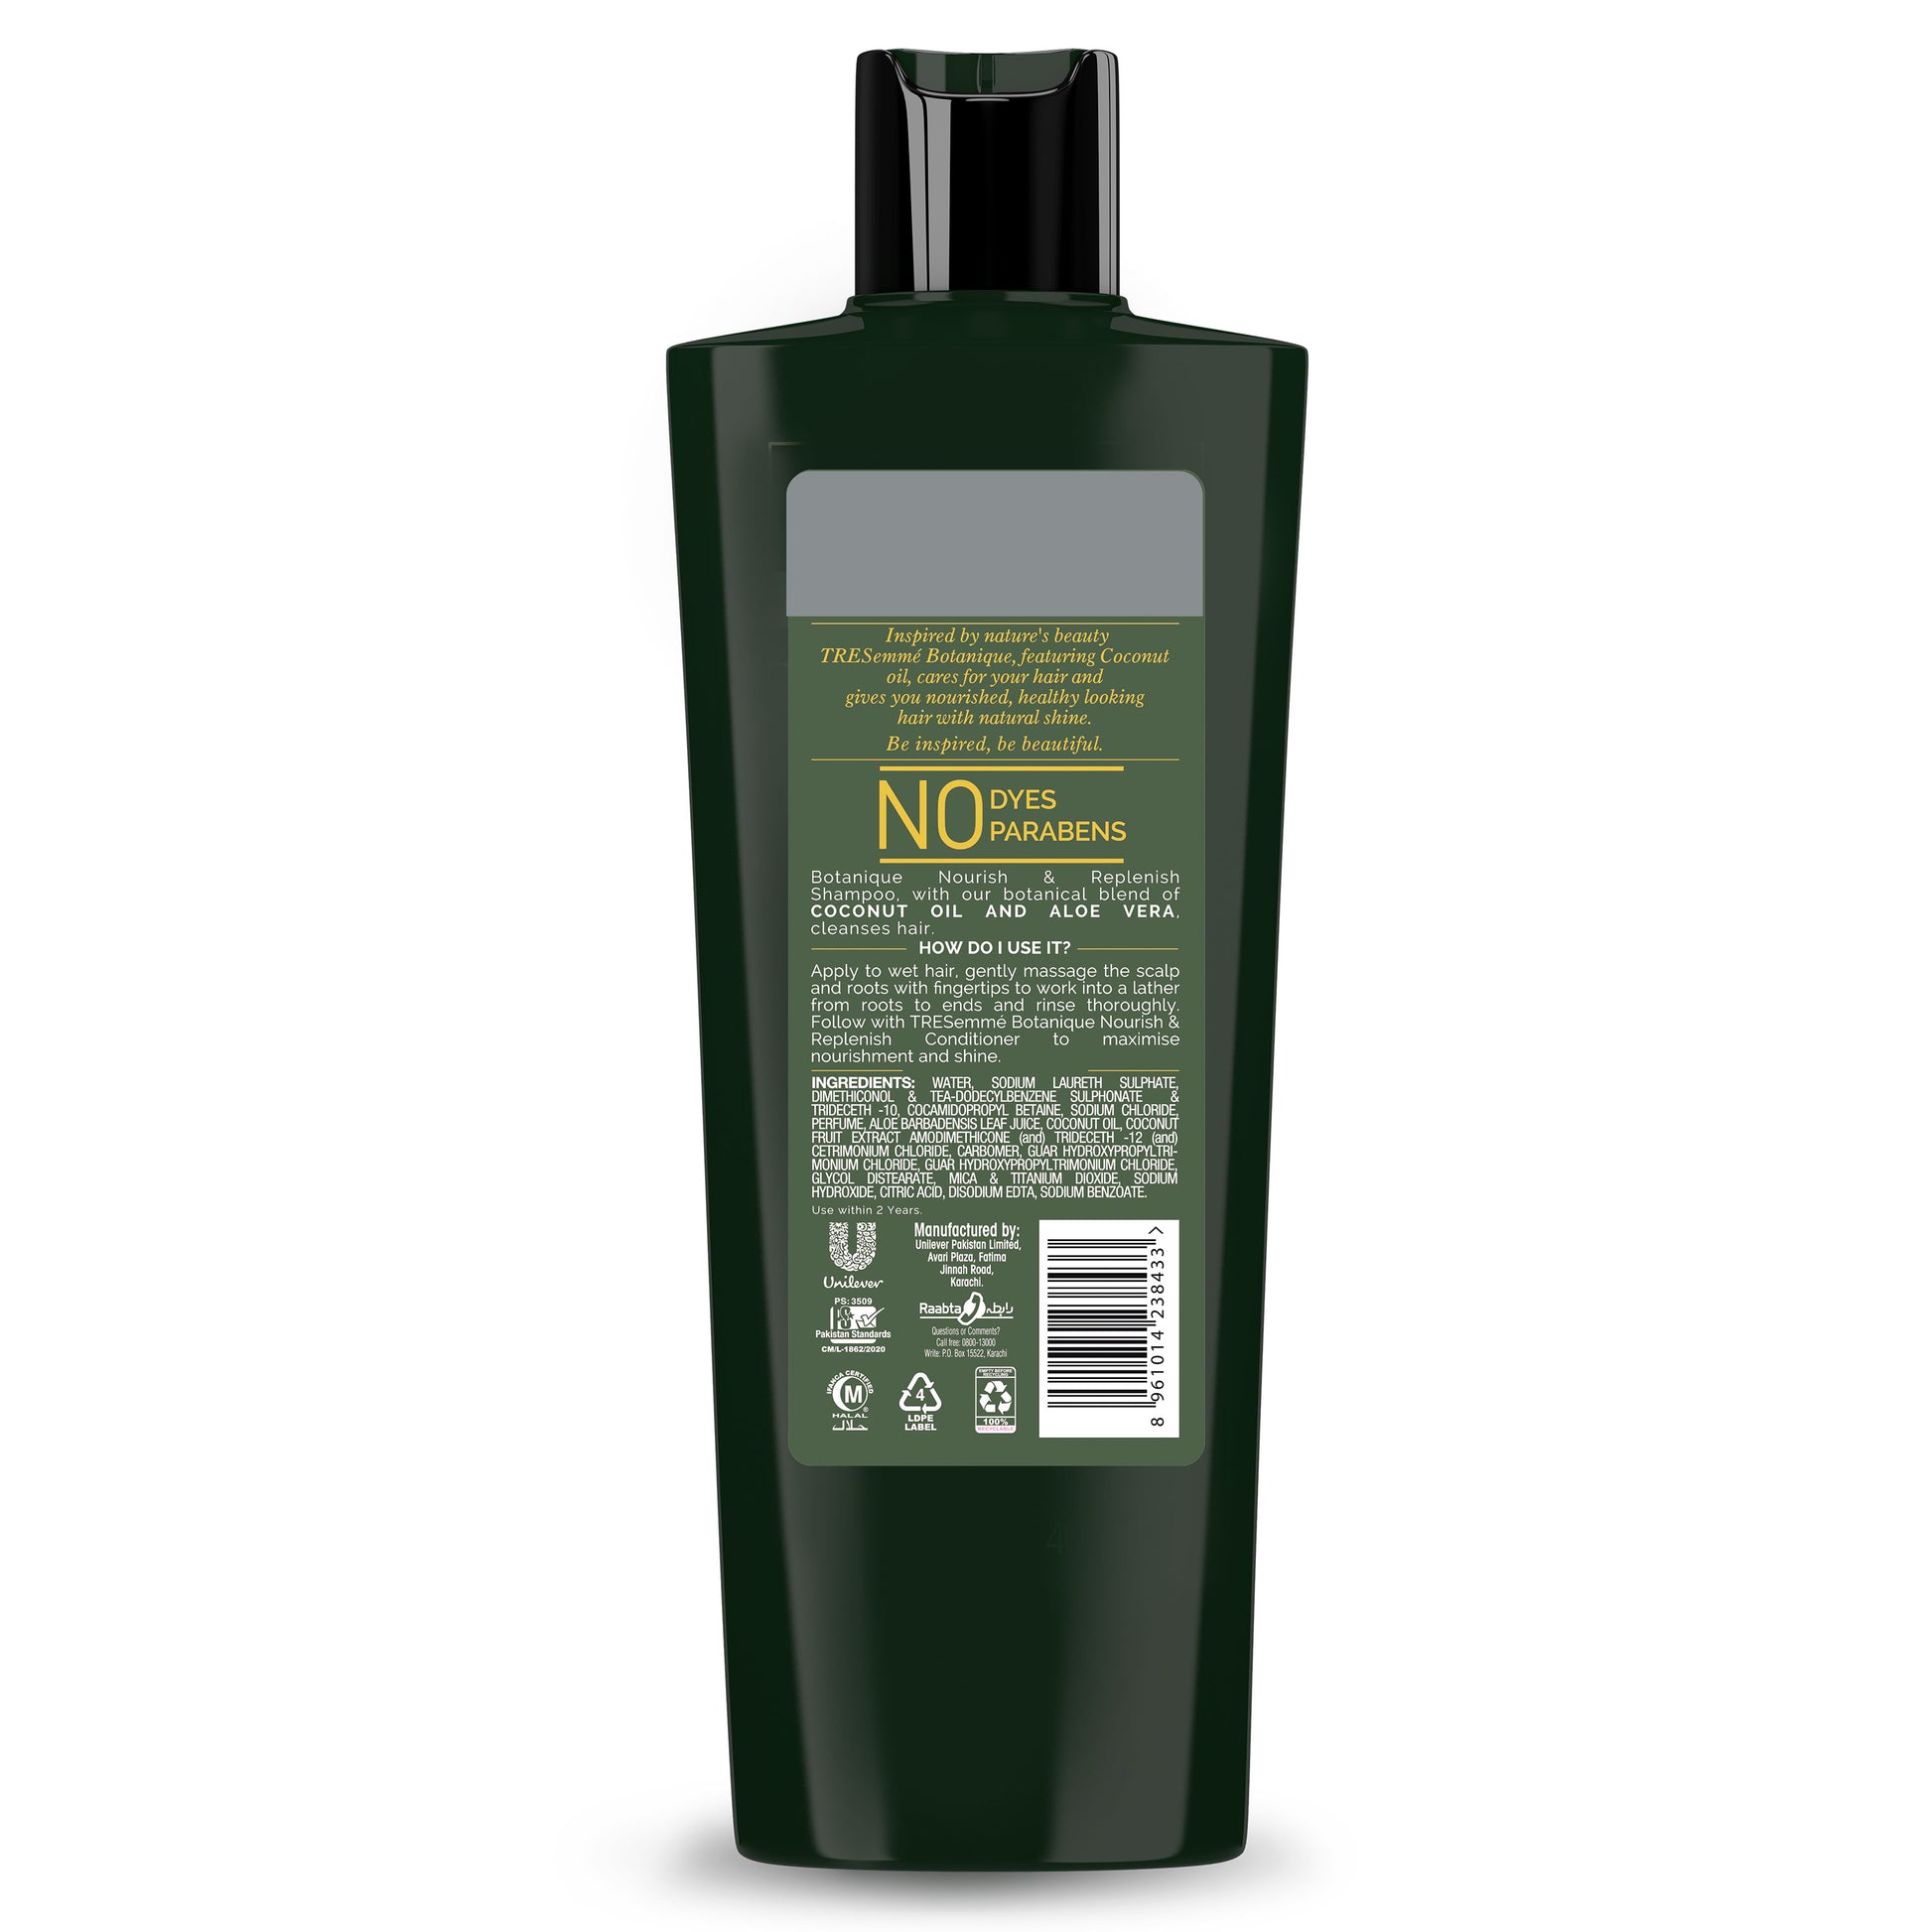 Tresemme Botanique Nourish & replenish shampoo 360ml